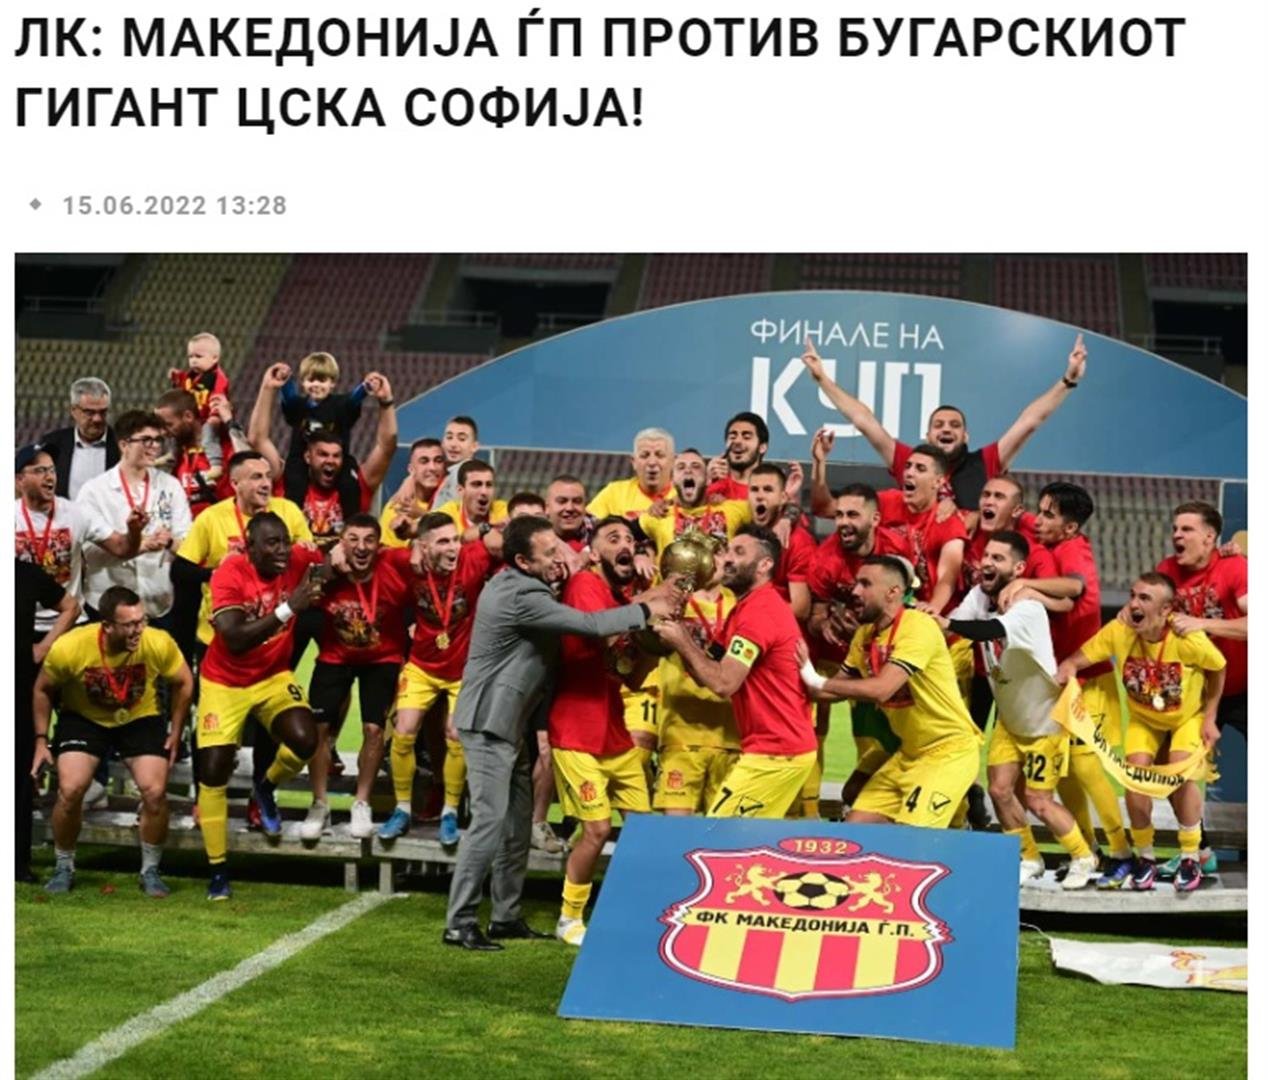 В Македония наричат ЦСКА български гигант.